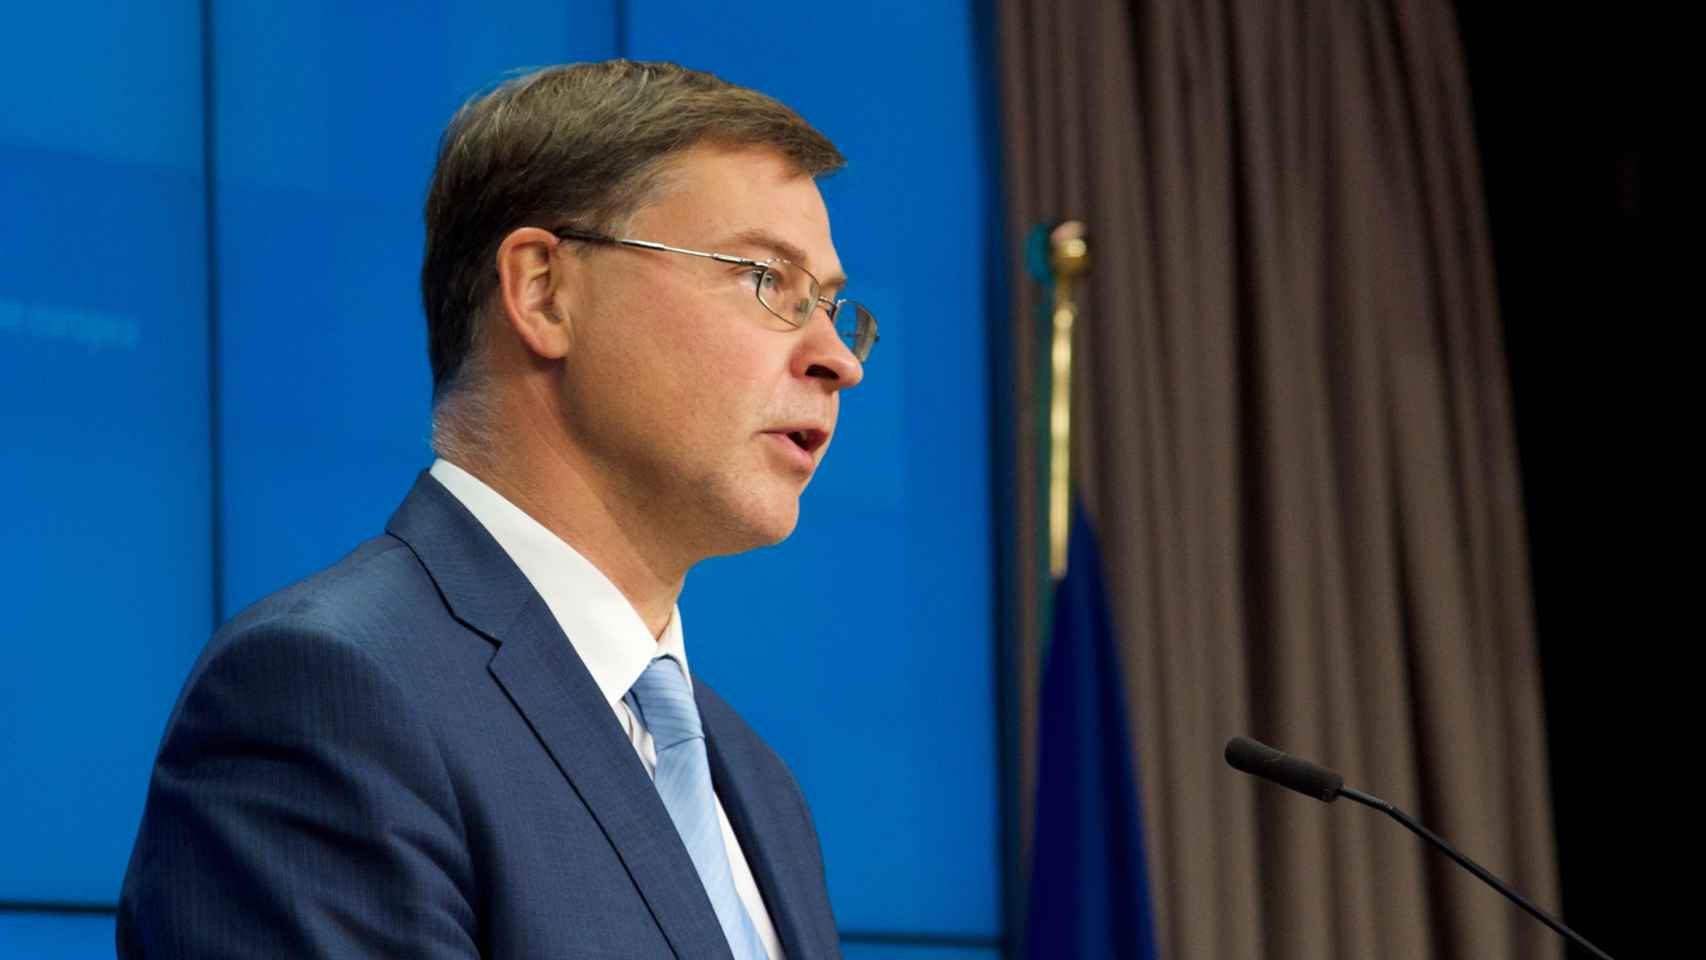 El vicepresidente económico de la Comisión, Valdis Dombrovskis, durante la rueda de prensa de este martes